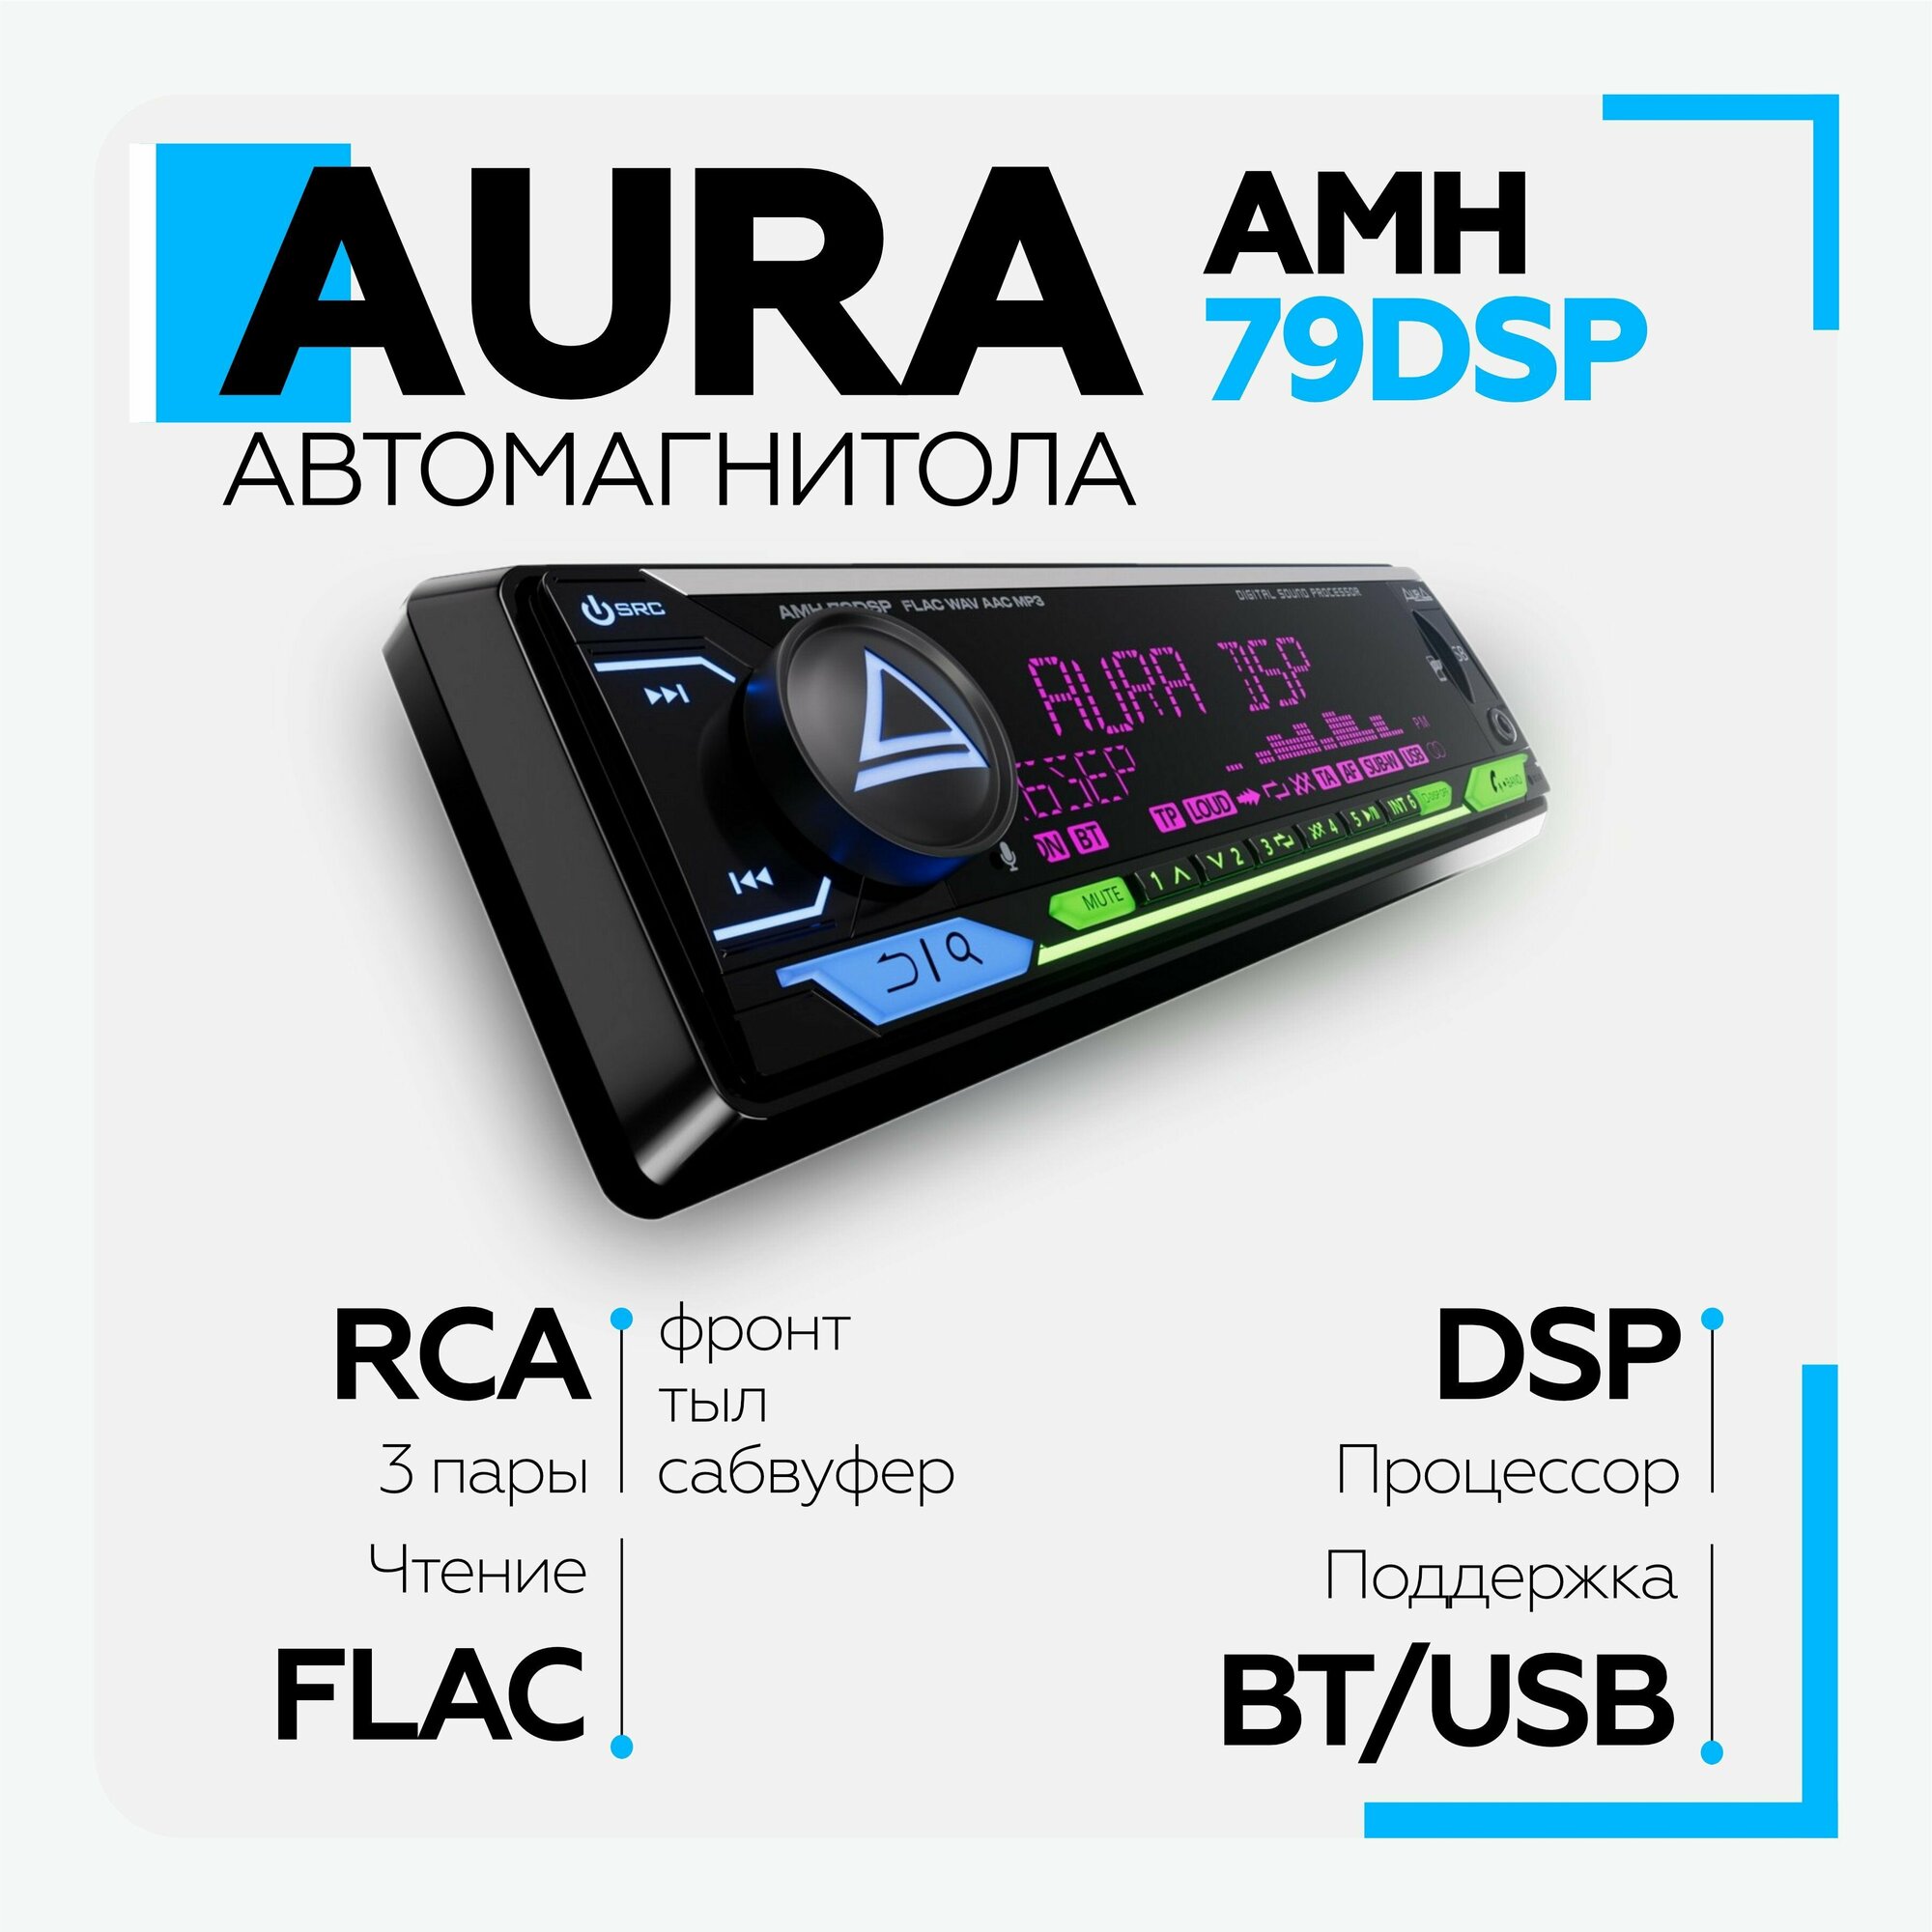 Процессорная автомагнитола Aura AMH-79 DSP 1 DIN с функциями RCA, FLAC, Bluetooth, USB, SD, FM, Android, iOS, универсальная